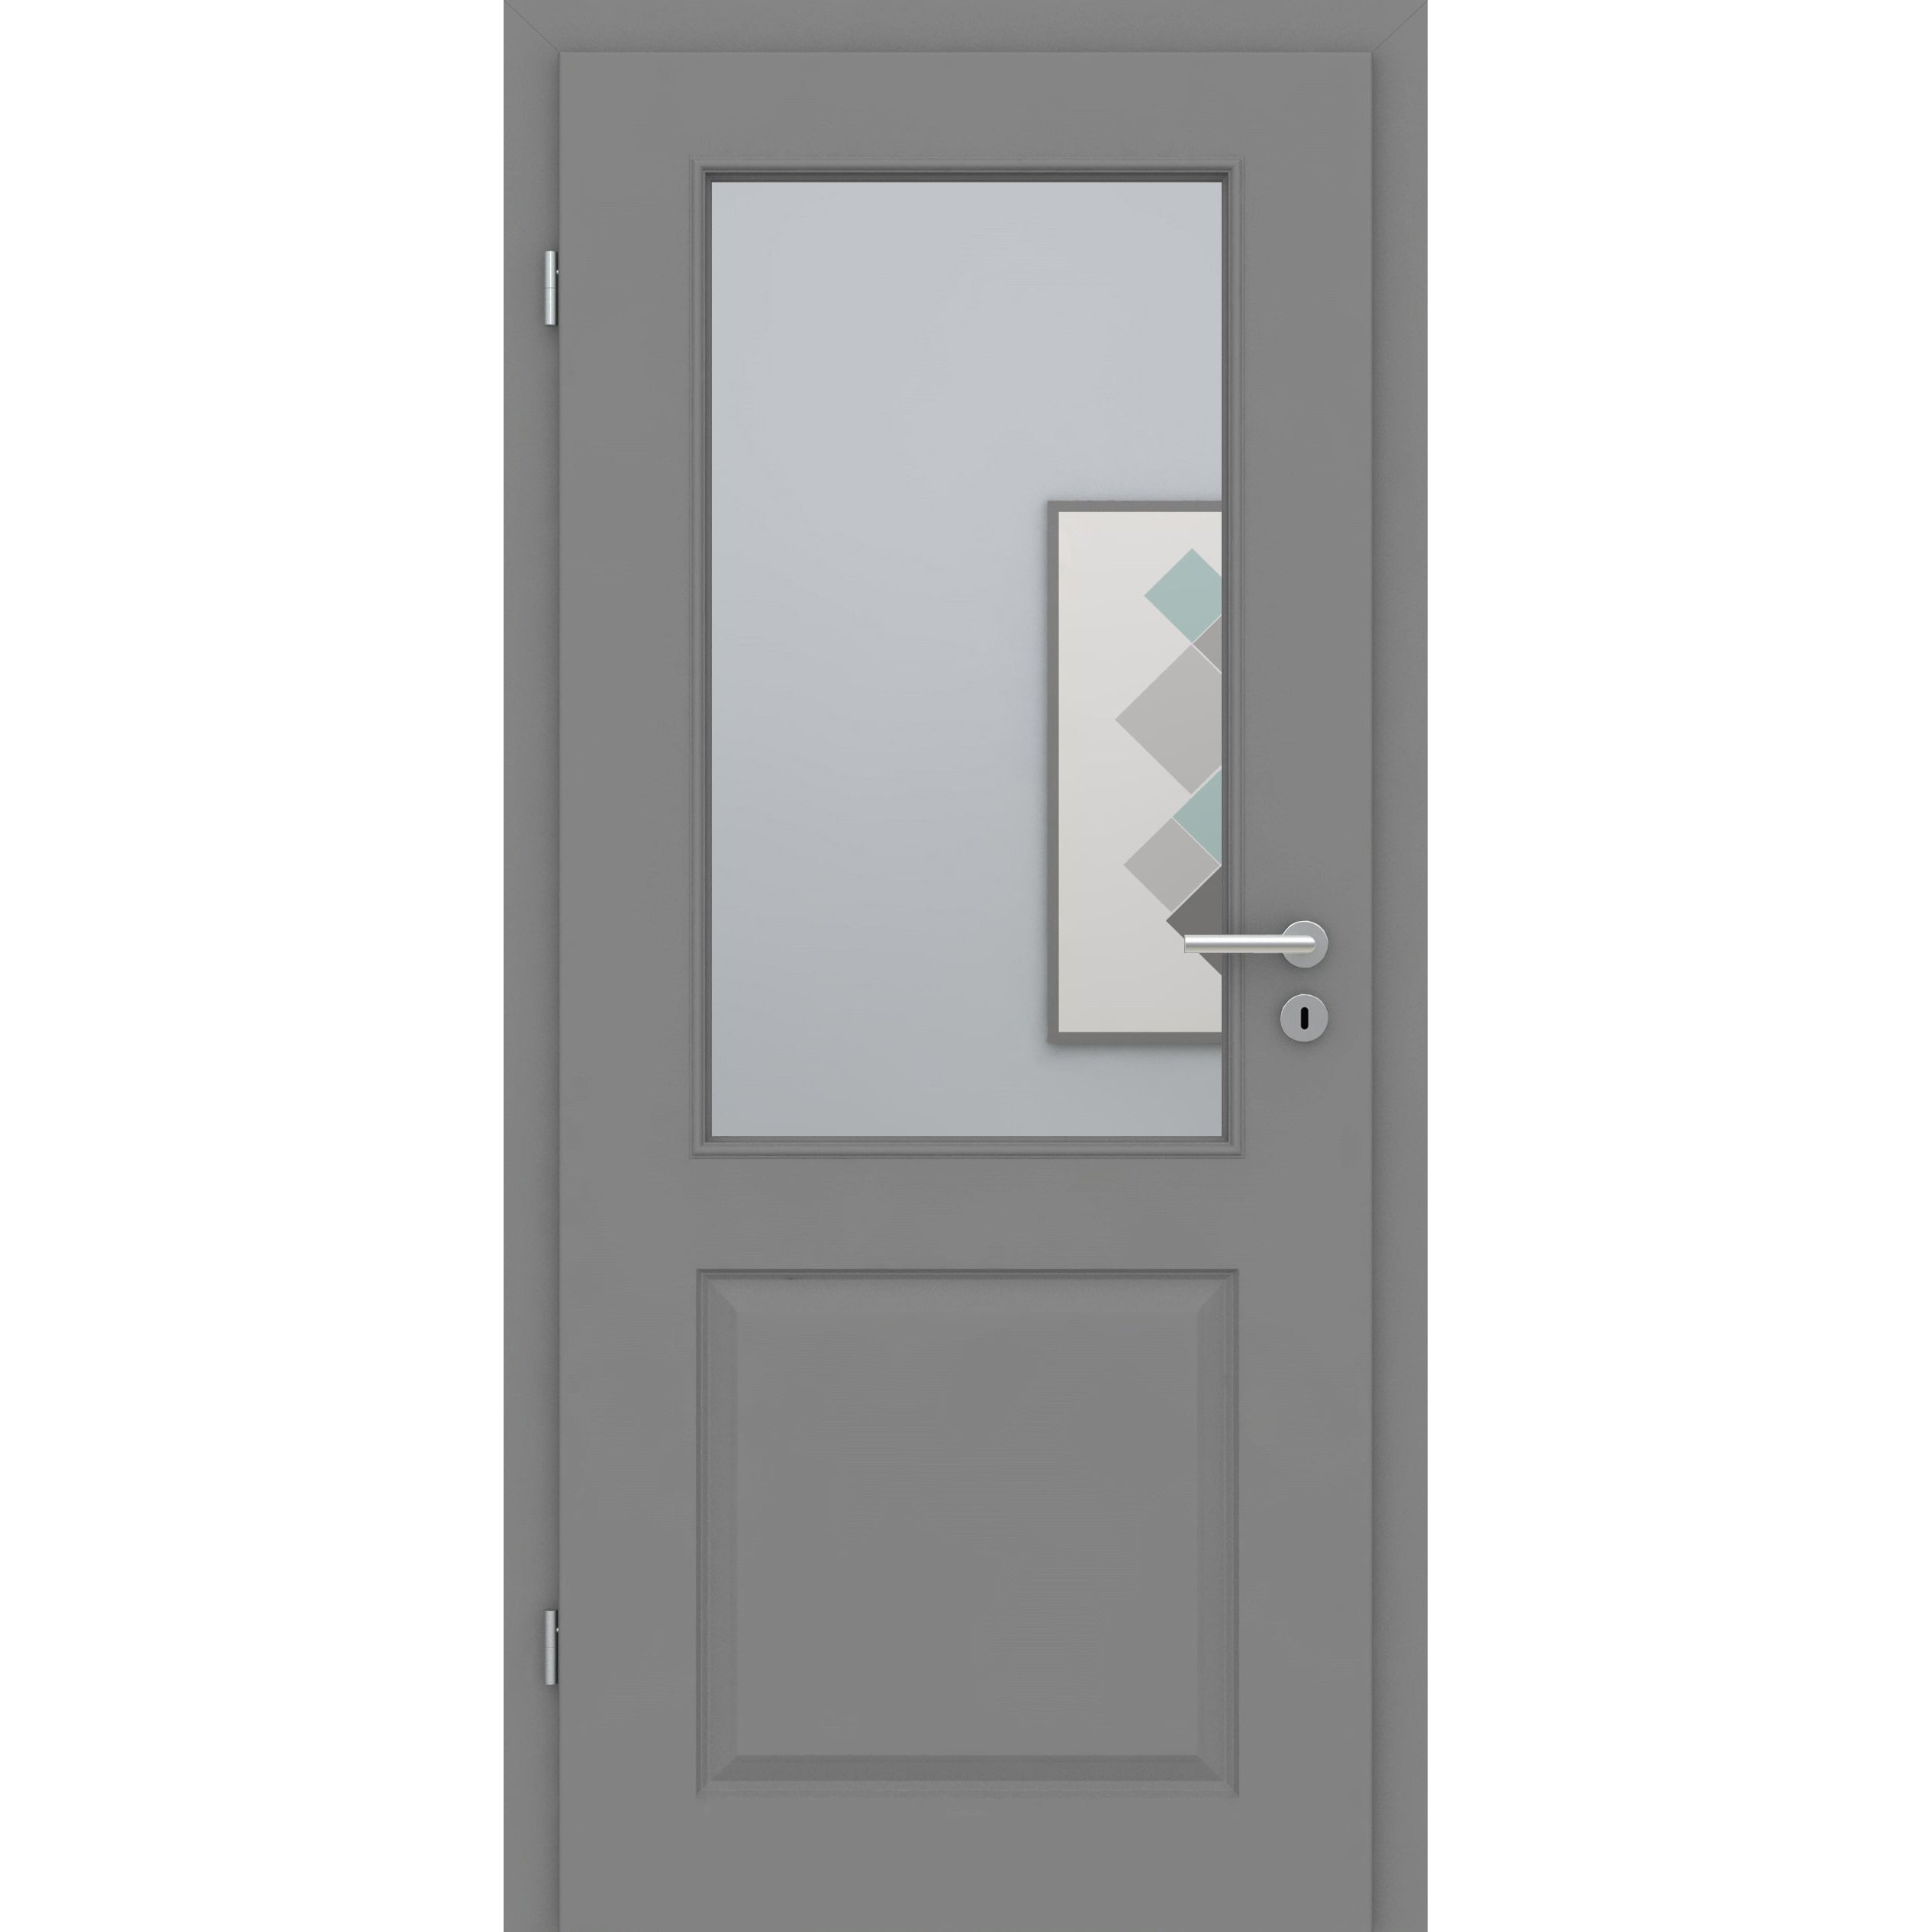 Zimmertür mit Zarge und Lichtausschnitt grau 2 Kassetten Designkante - Modell Stiltür K27LA